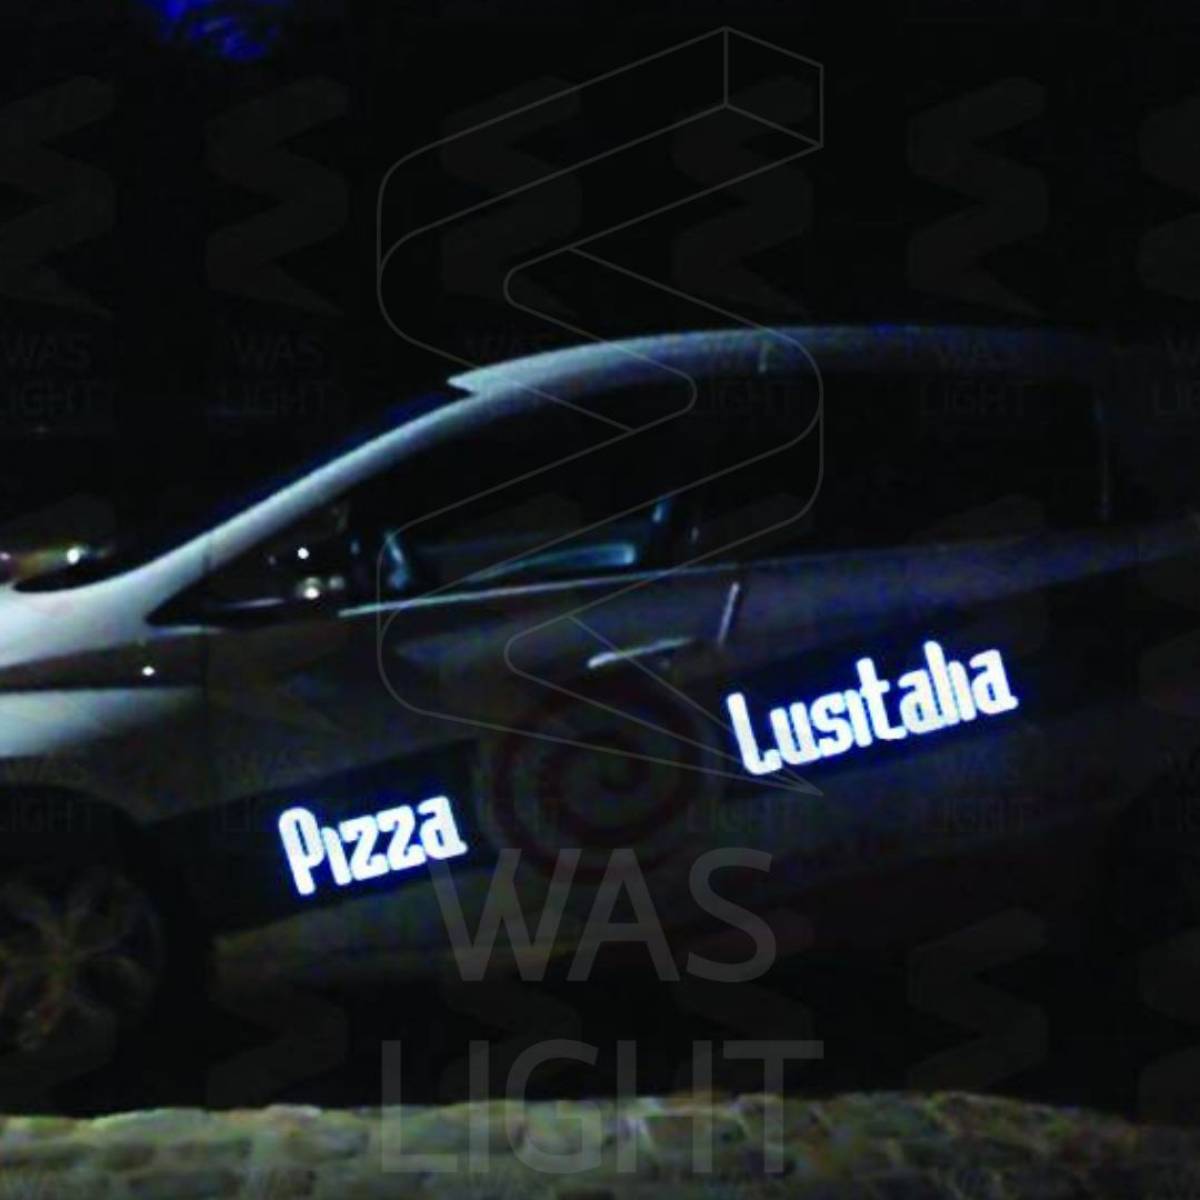 Marquage luminescent de la pizzeria Lusitalia dans l'Oise